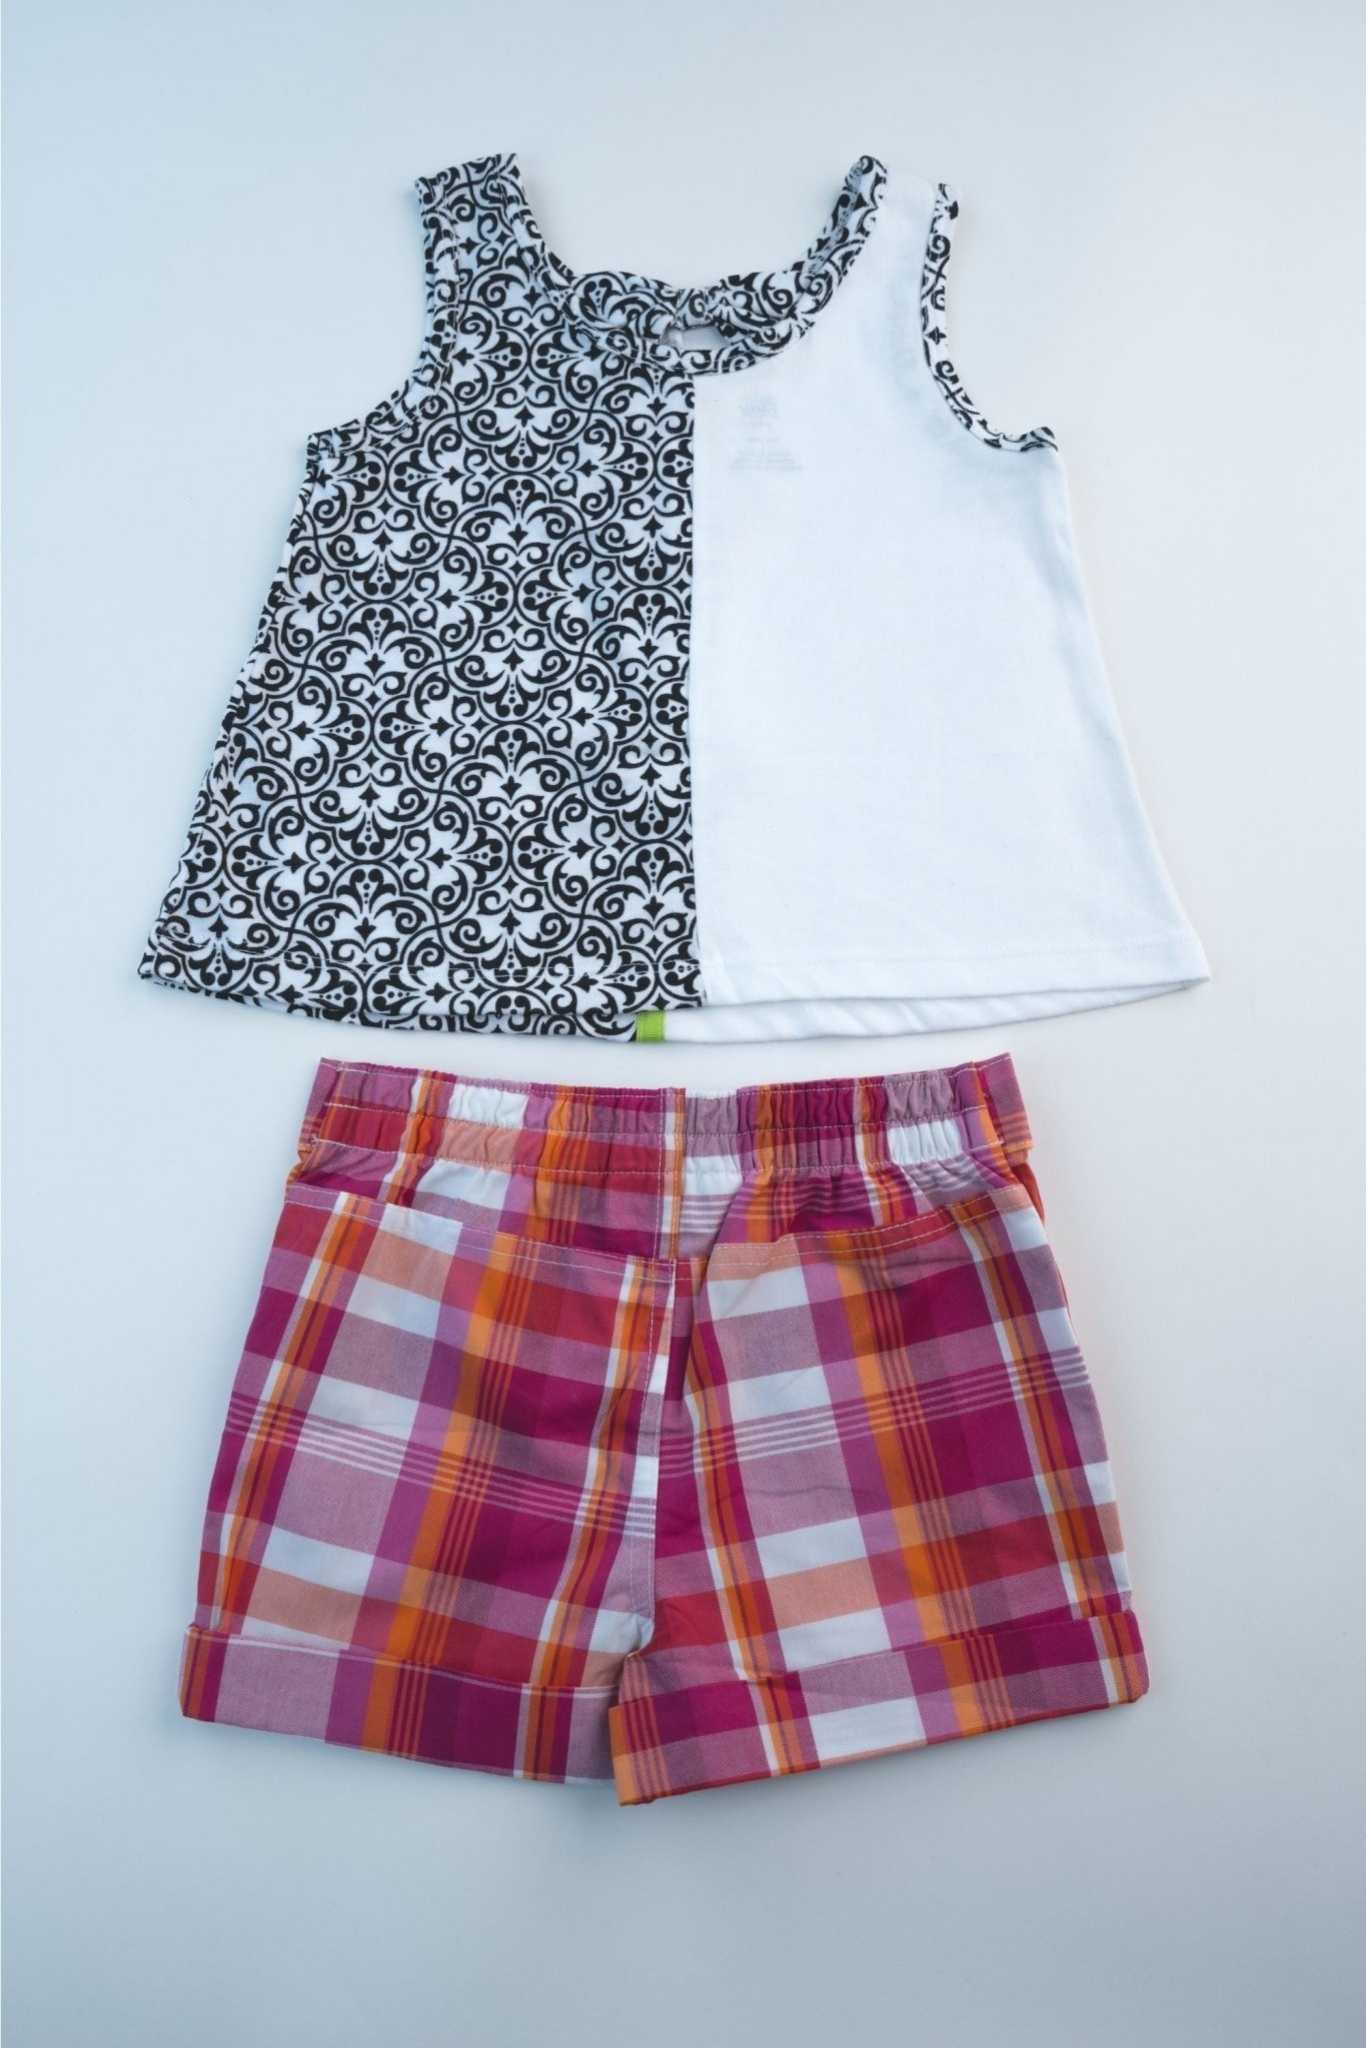 Kids HQ - 3d Flower Set (Pink Checkered Shorts) - MixMax